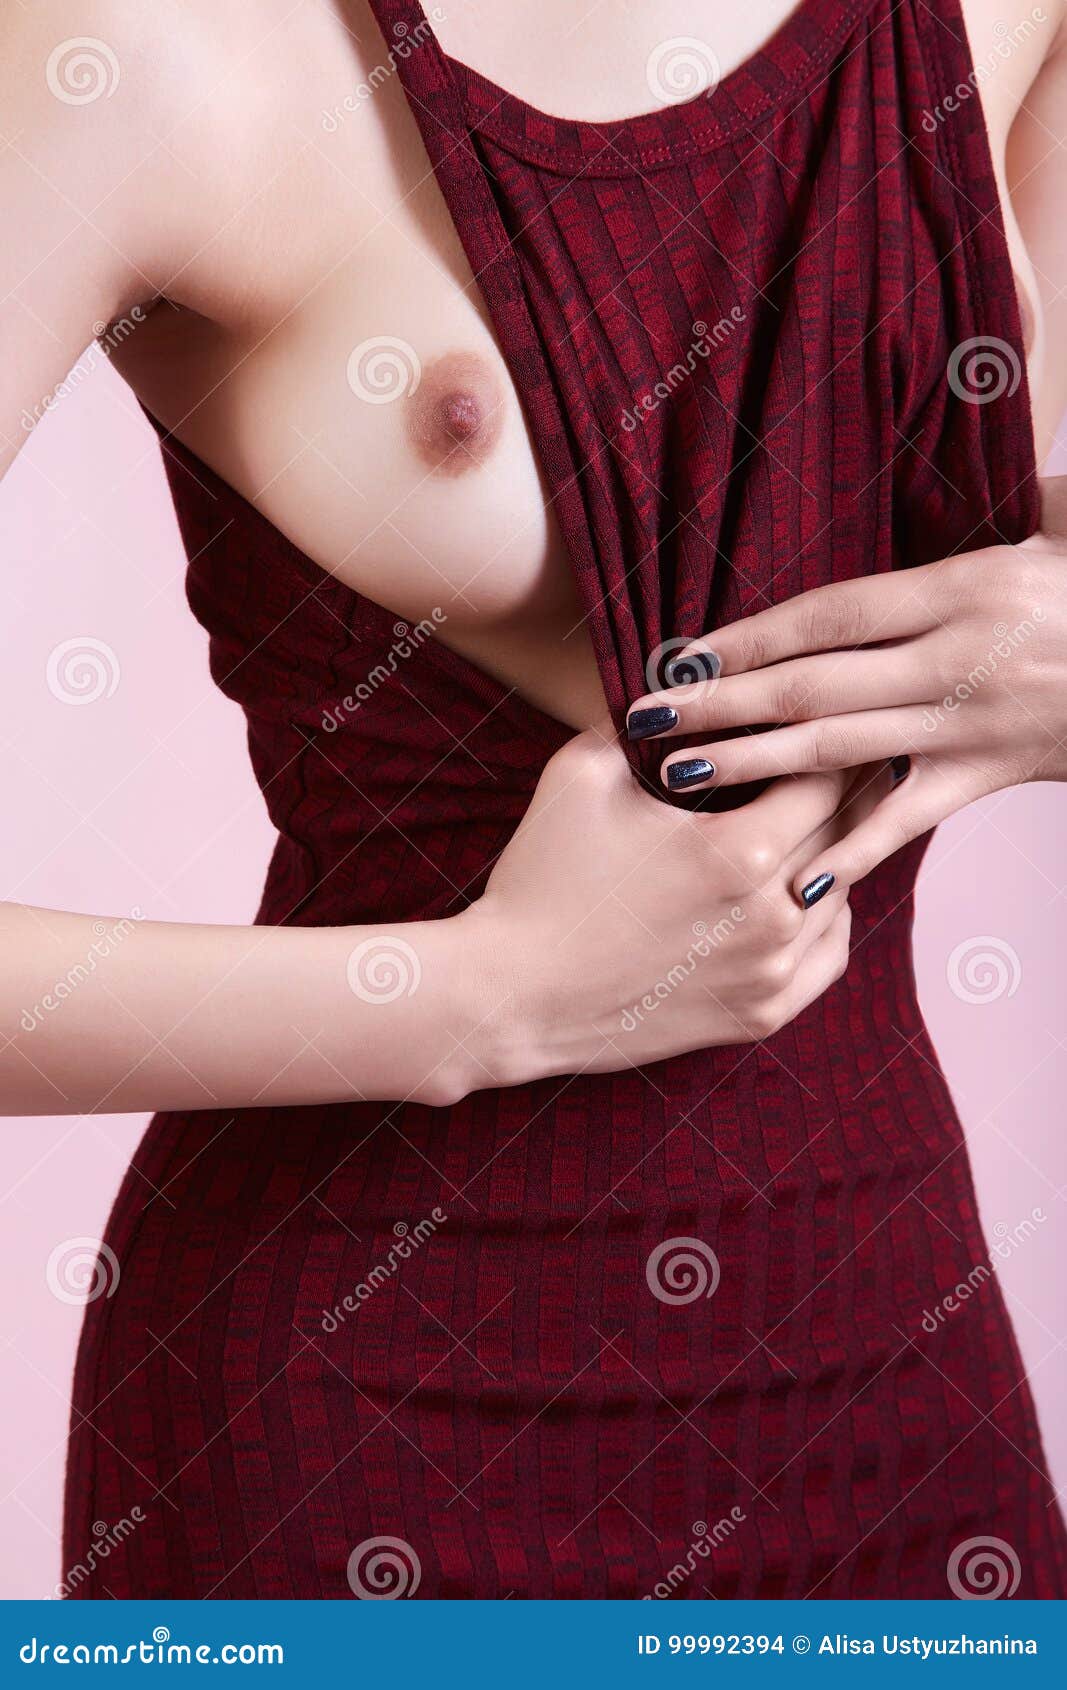 Sexy girl open cloth